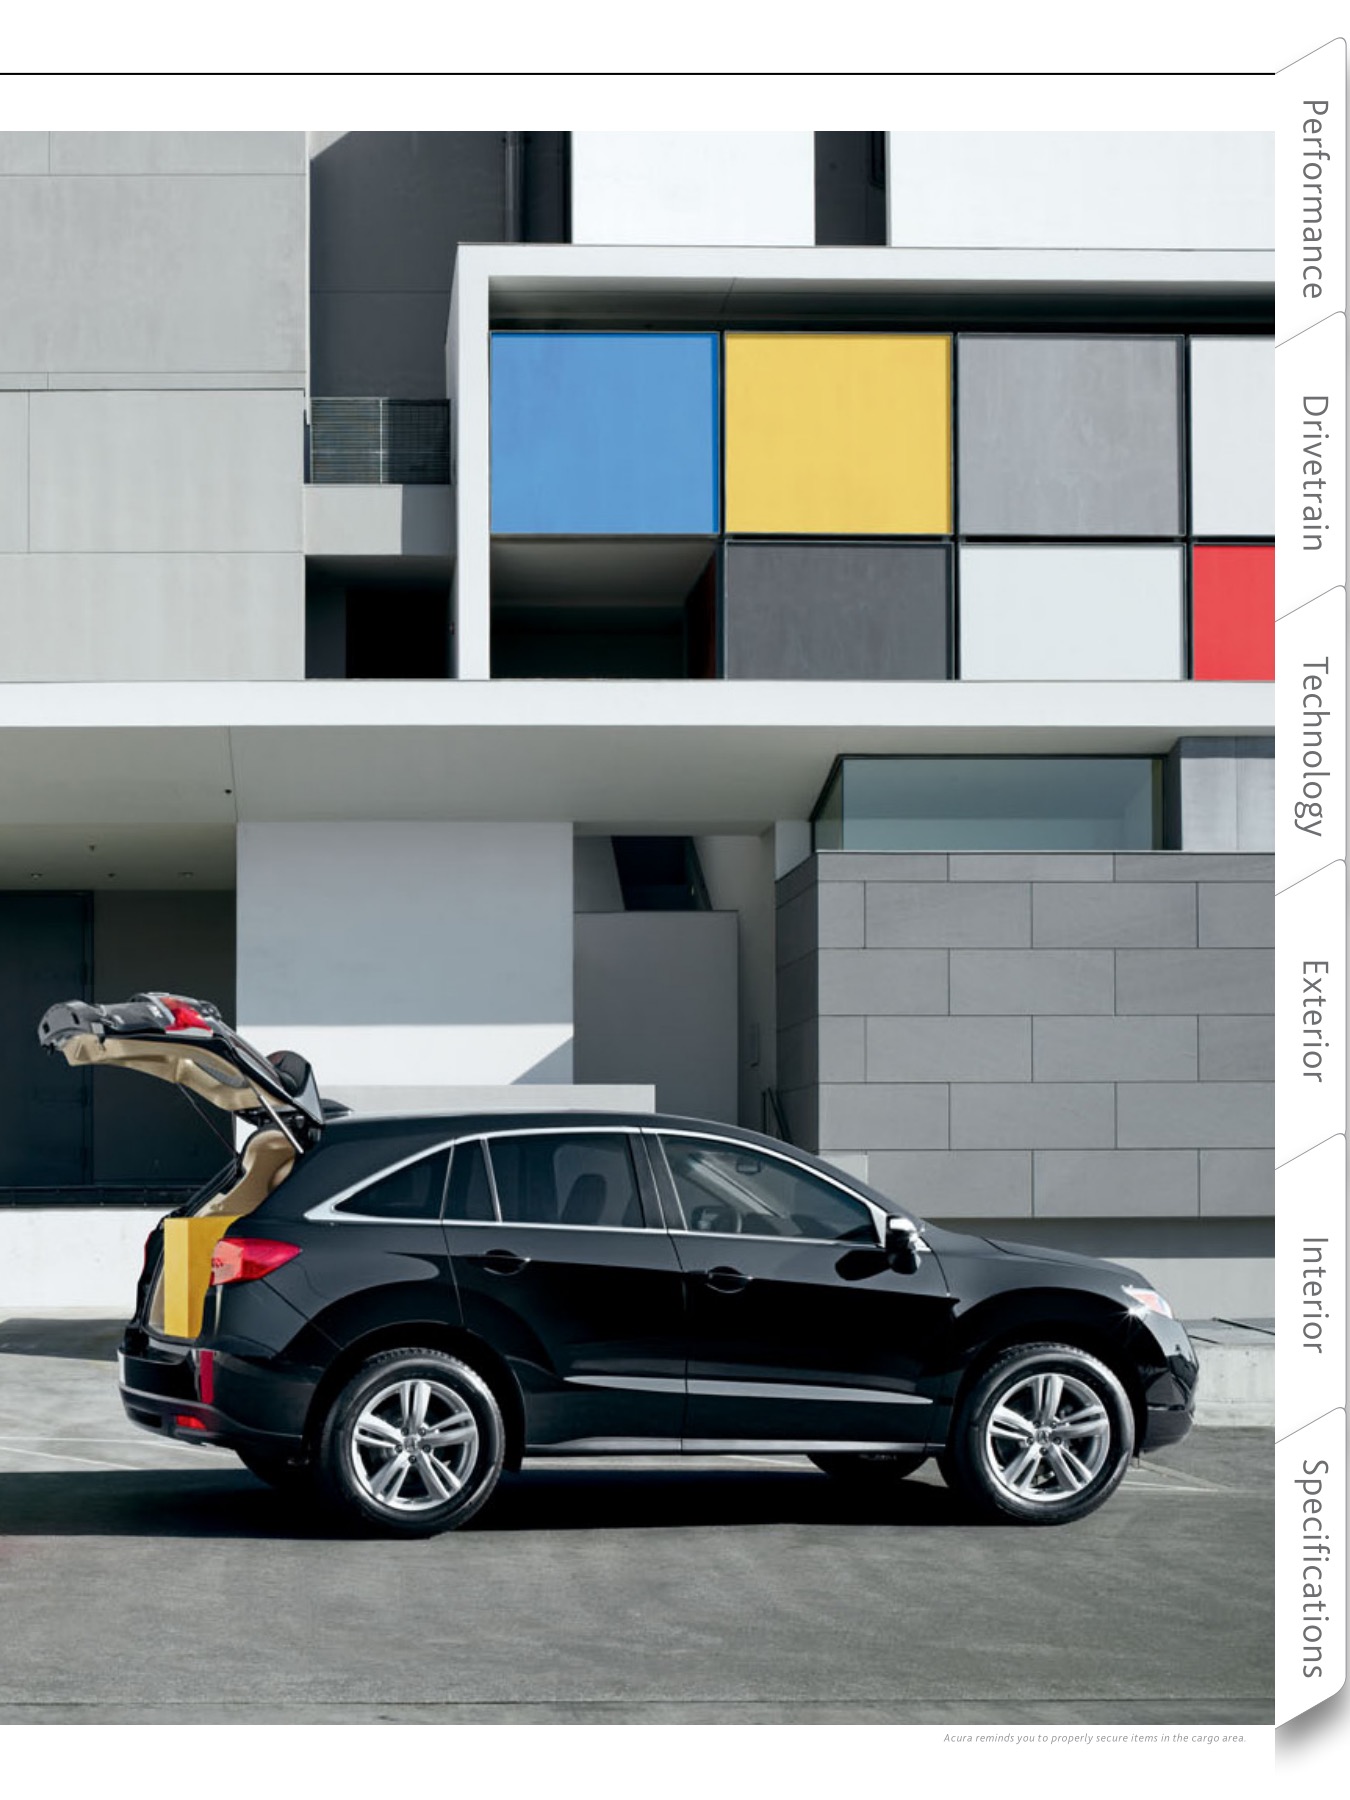 2013 Acura RDX Brochure Page 18